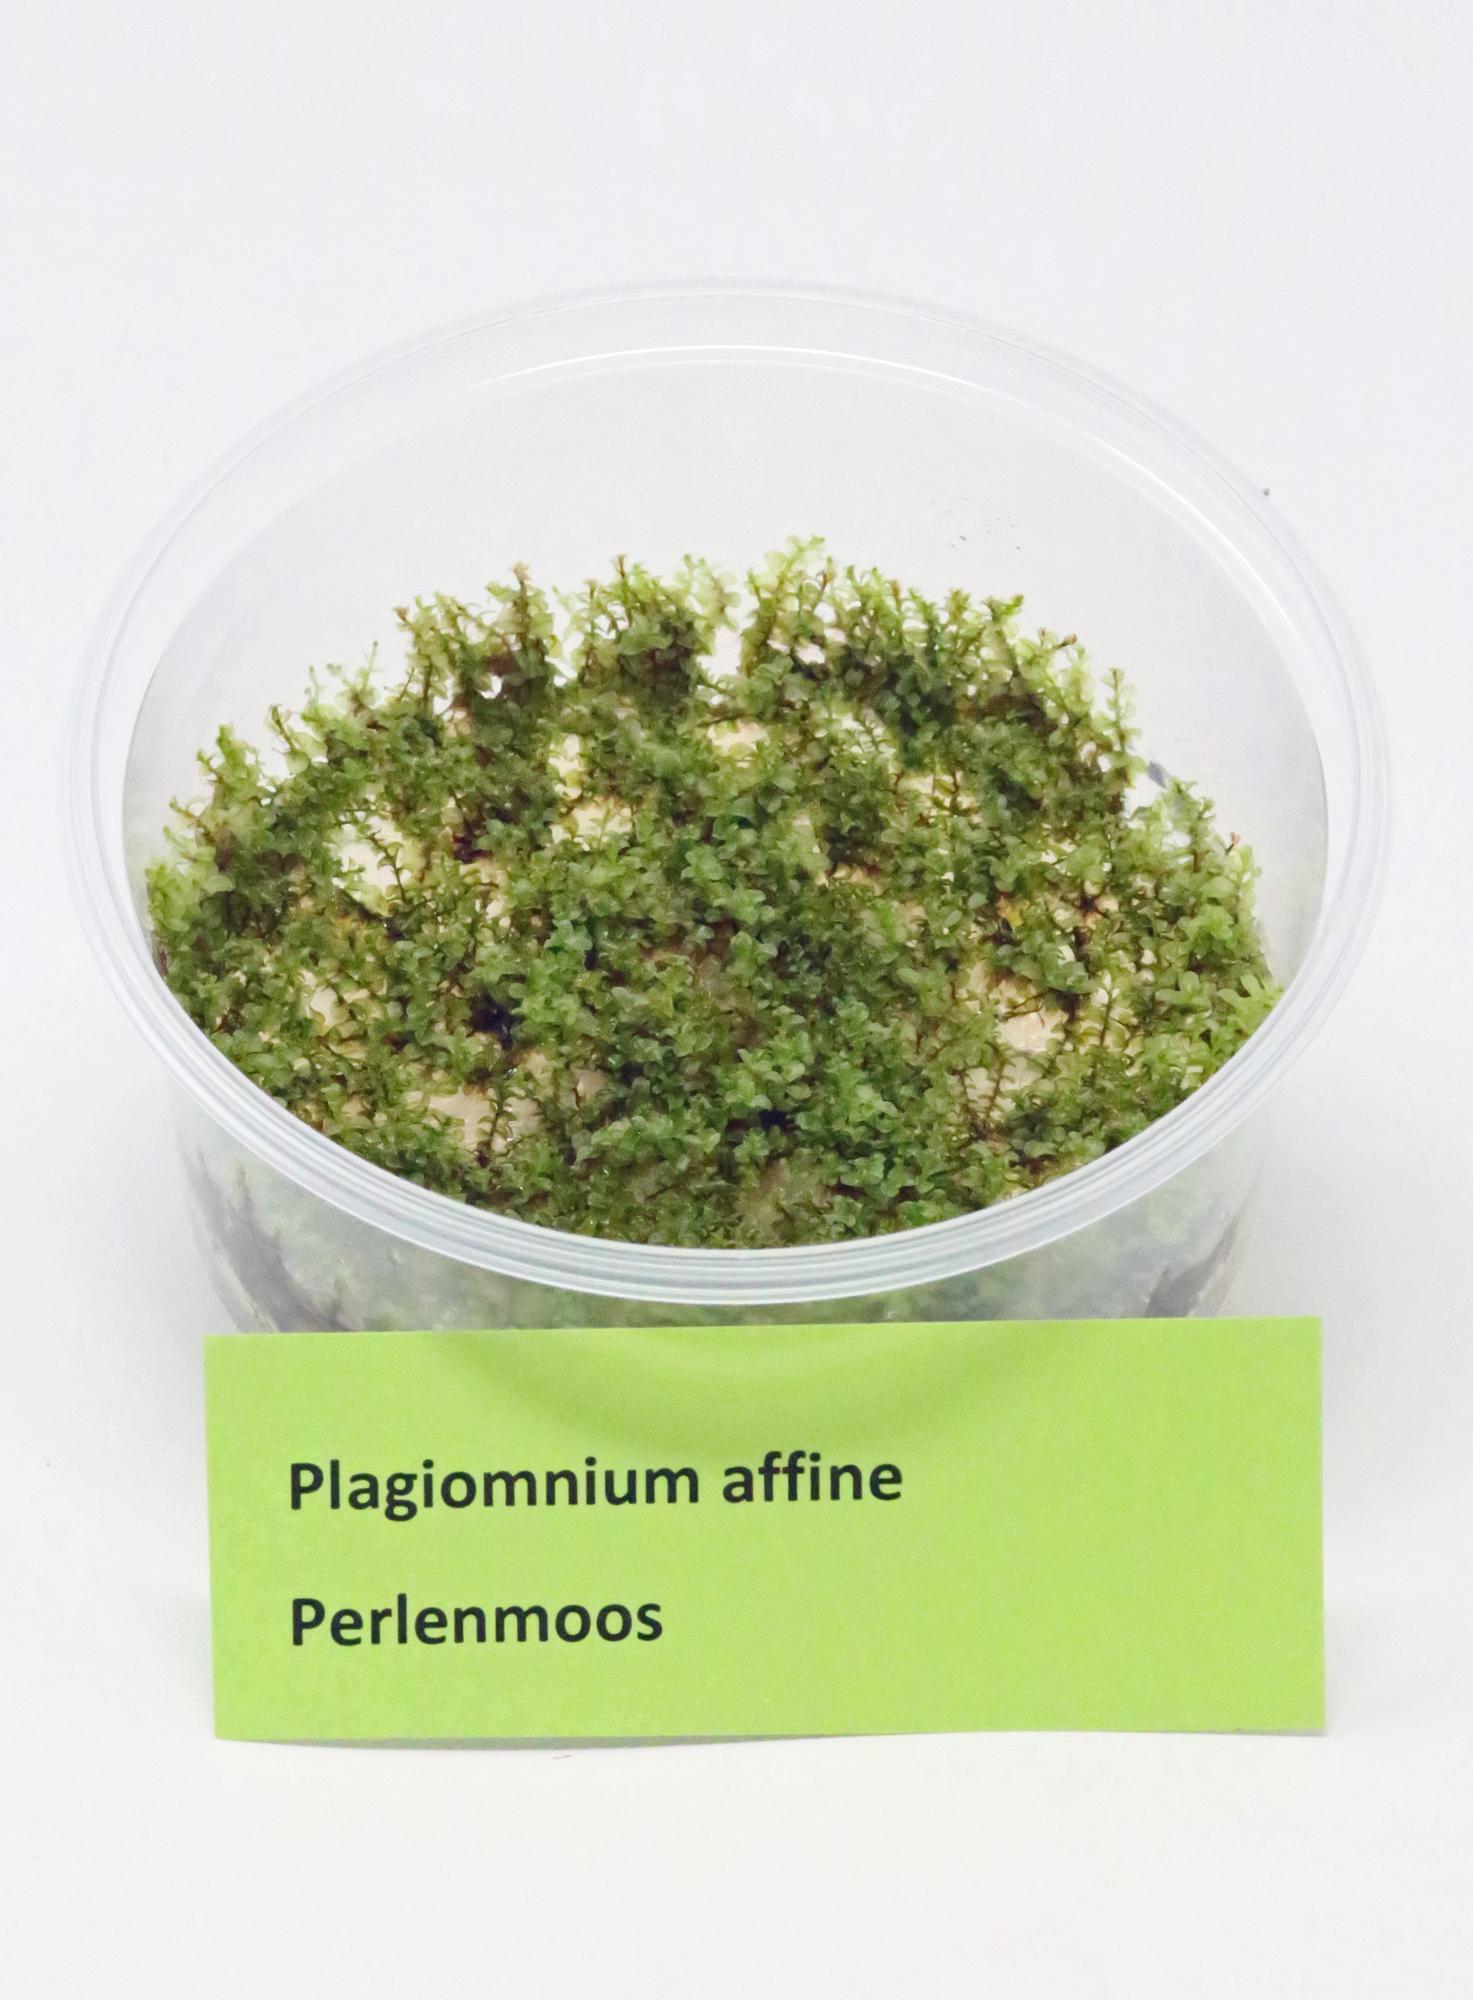 Plagiomnium-affine-Invitro.jpg